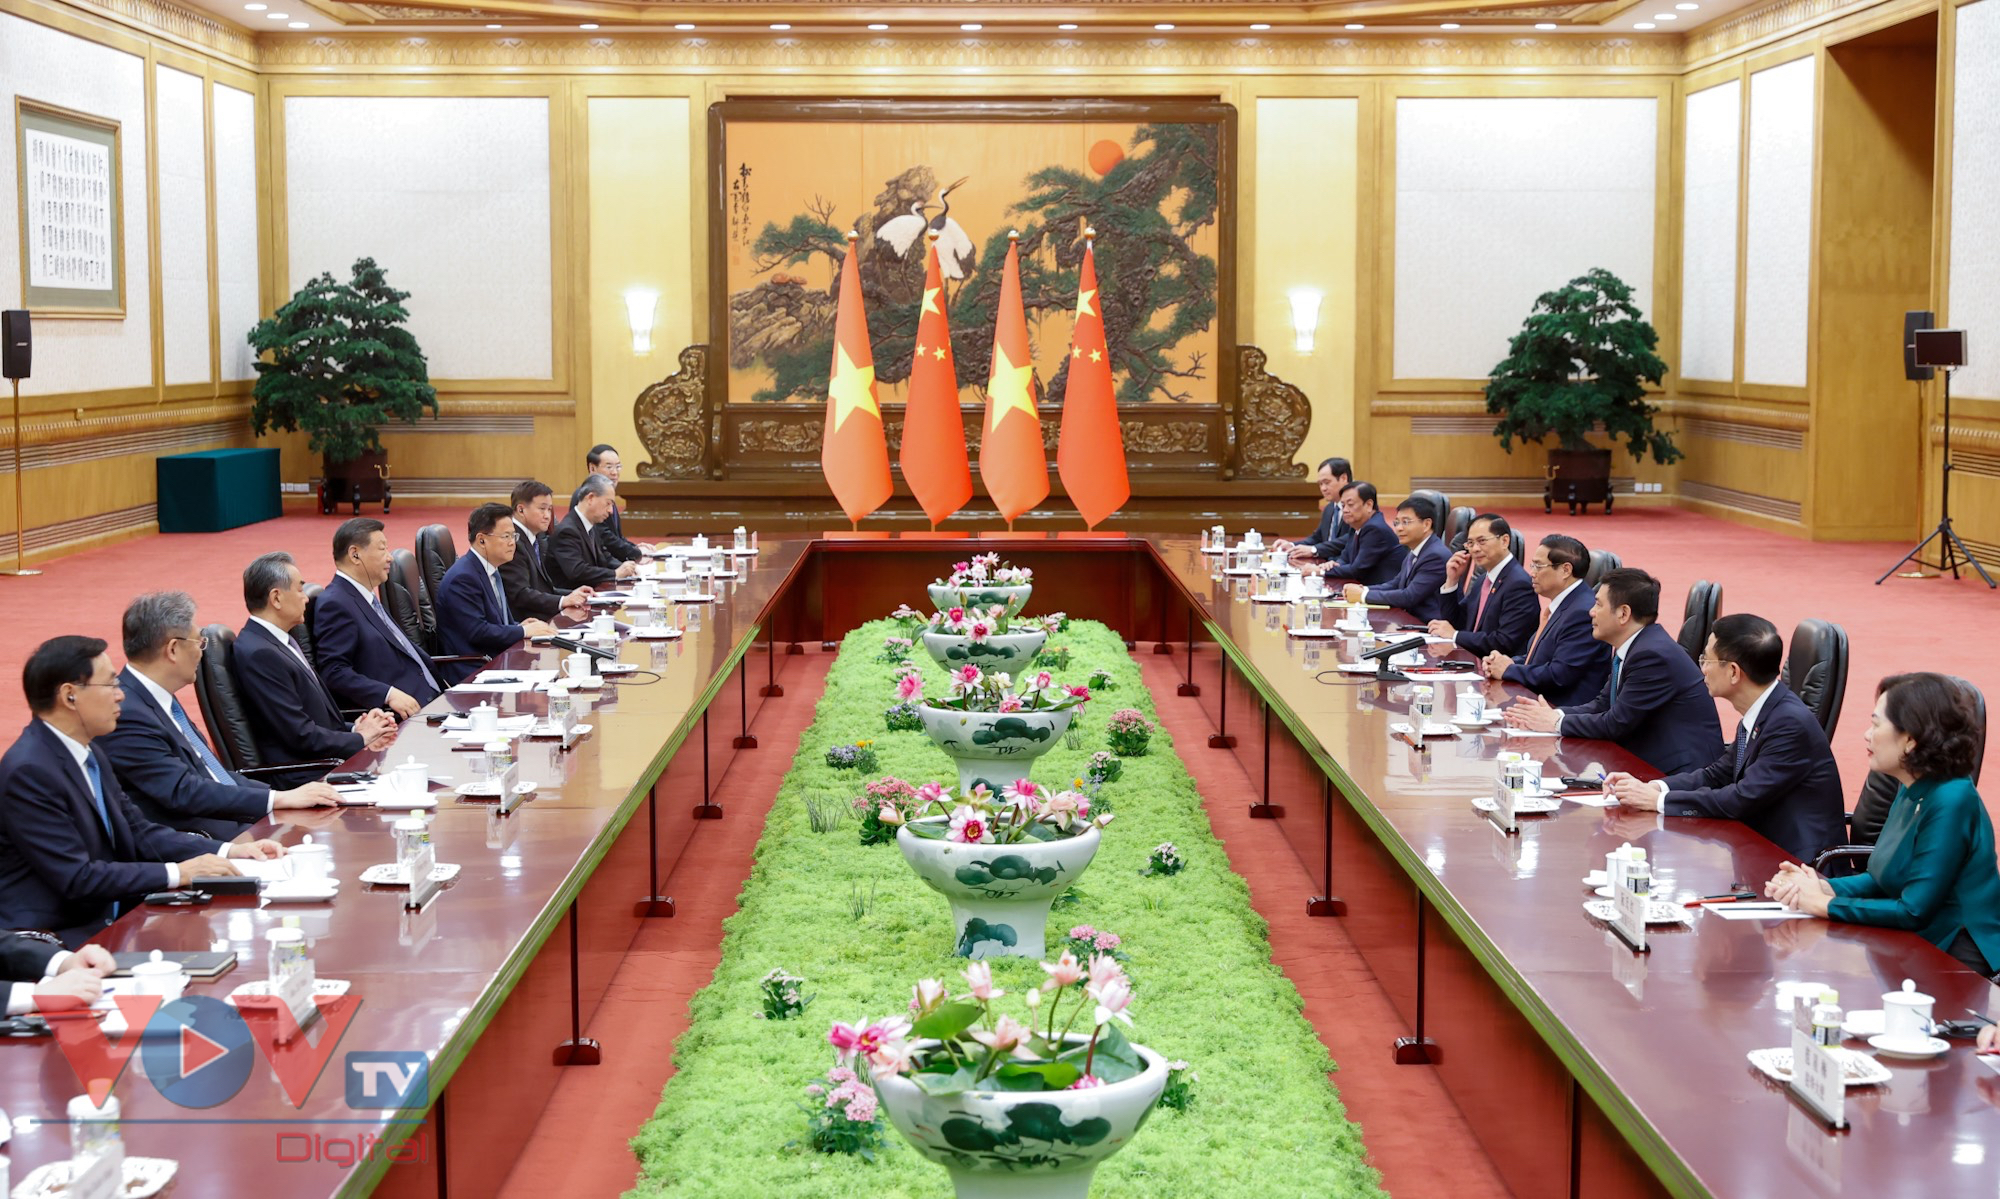 Thủ tướng Phạm Minh Chính kết thúc tốt đẹp chuyến công tác tham dự Hội nghị WEF Đại Liên và làm việc tại Trung Quốc- Ảnh 3.